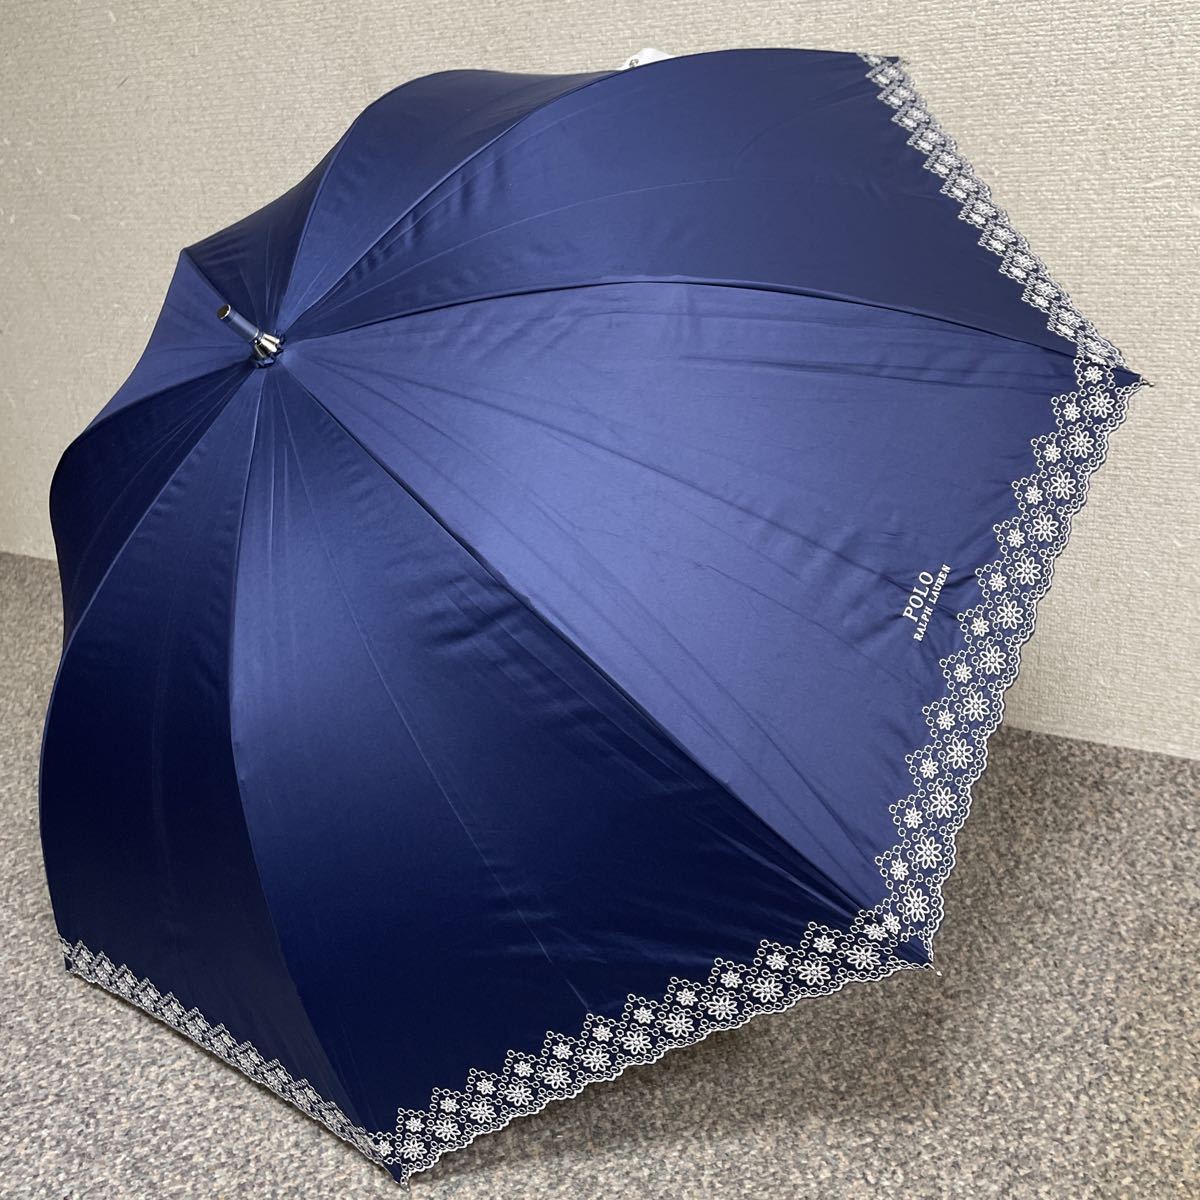 新品 ラルフローレン 日傘 長傘 傘 遮光 晴雨兼用パラソル 大きめ 大寸 C